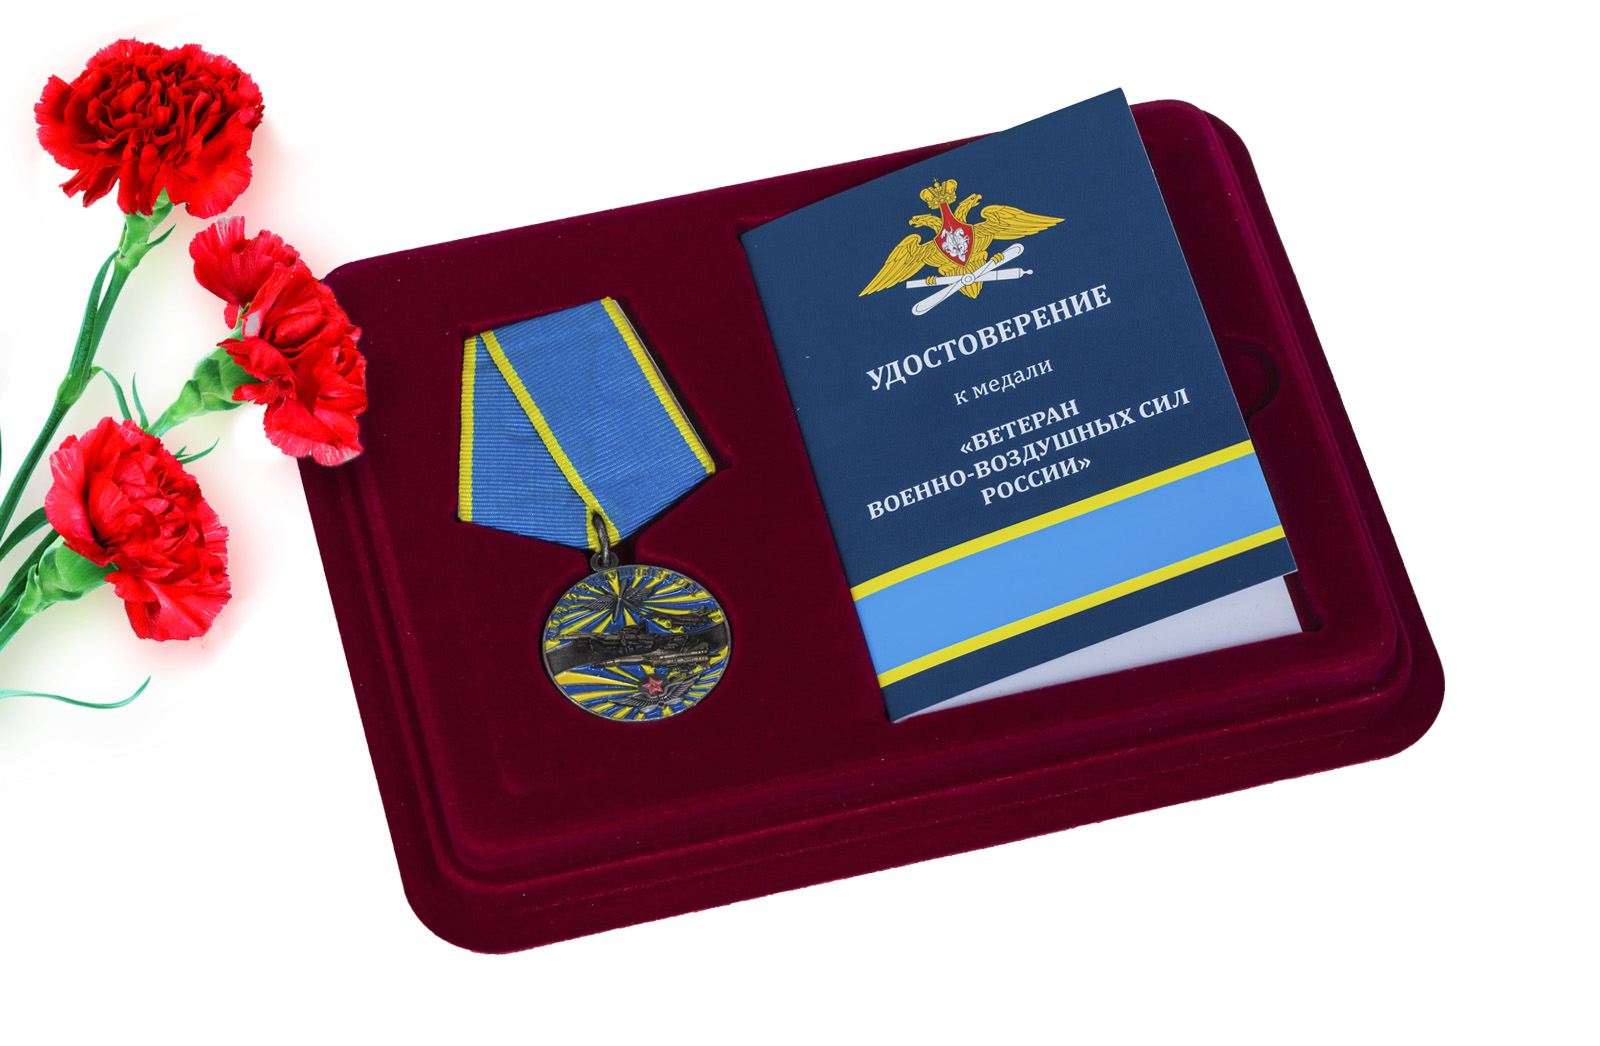 Купить медаль "Ветеран ВВС" в футляре с удостоверением оптом или в розницу